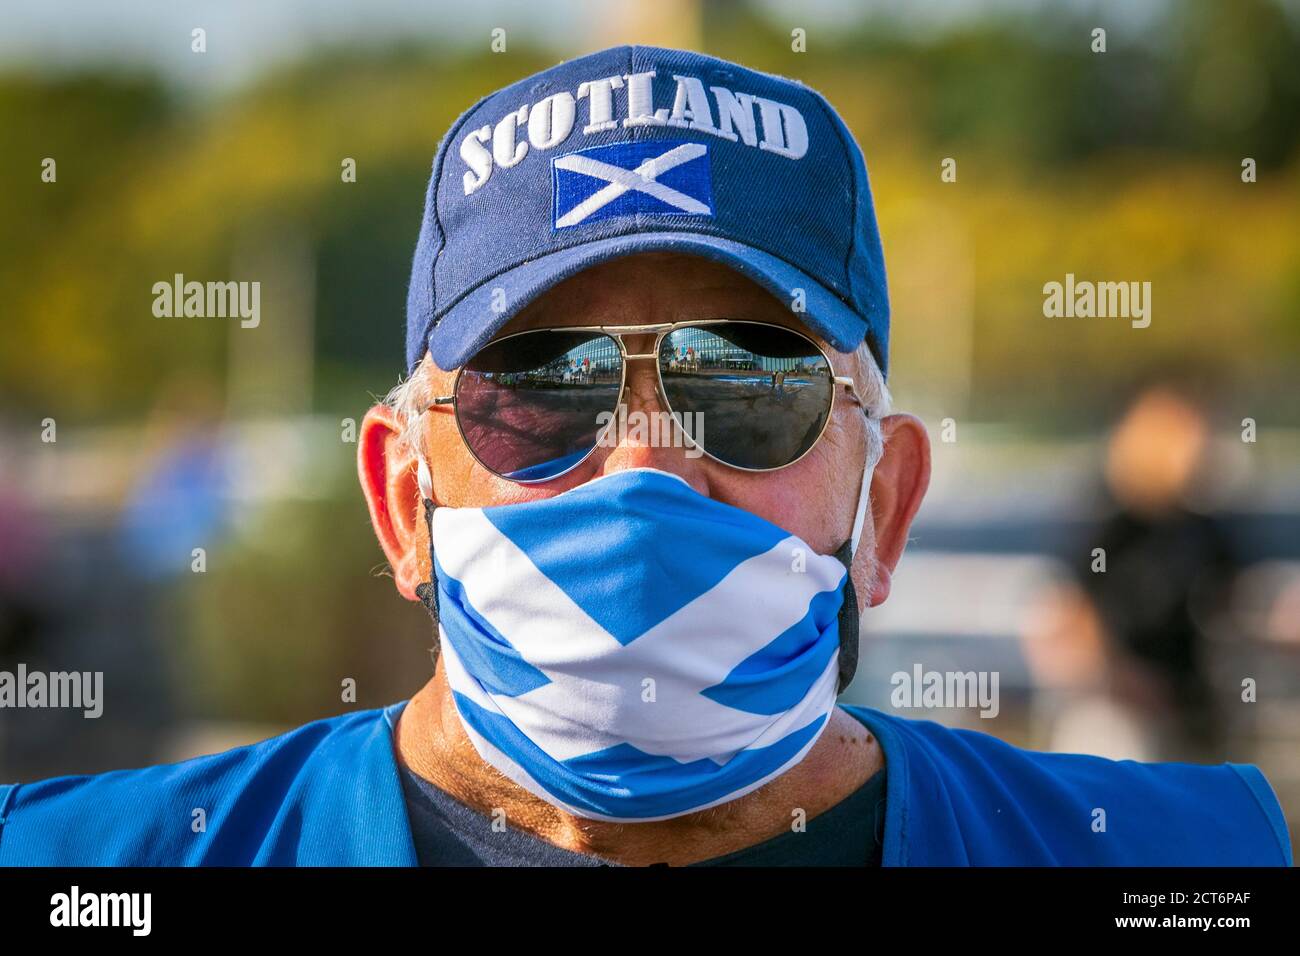 Scottish Independence sostenitore con una maschera di salvataggio, un cappello da baseball logo'ed Scotland e occhiali da sole, presi in un raduno politico indipendente, Foto Stock